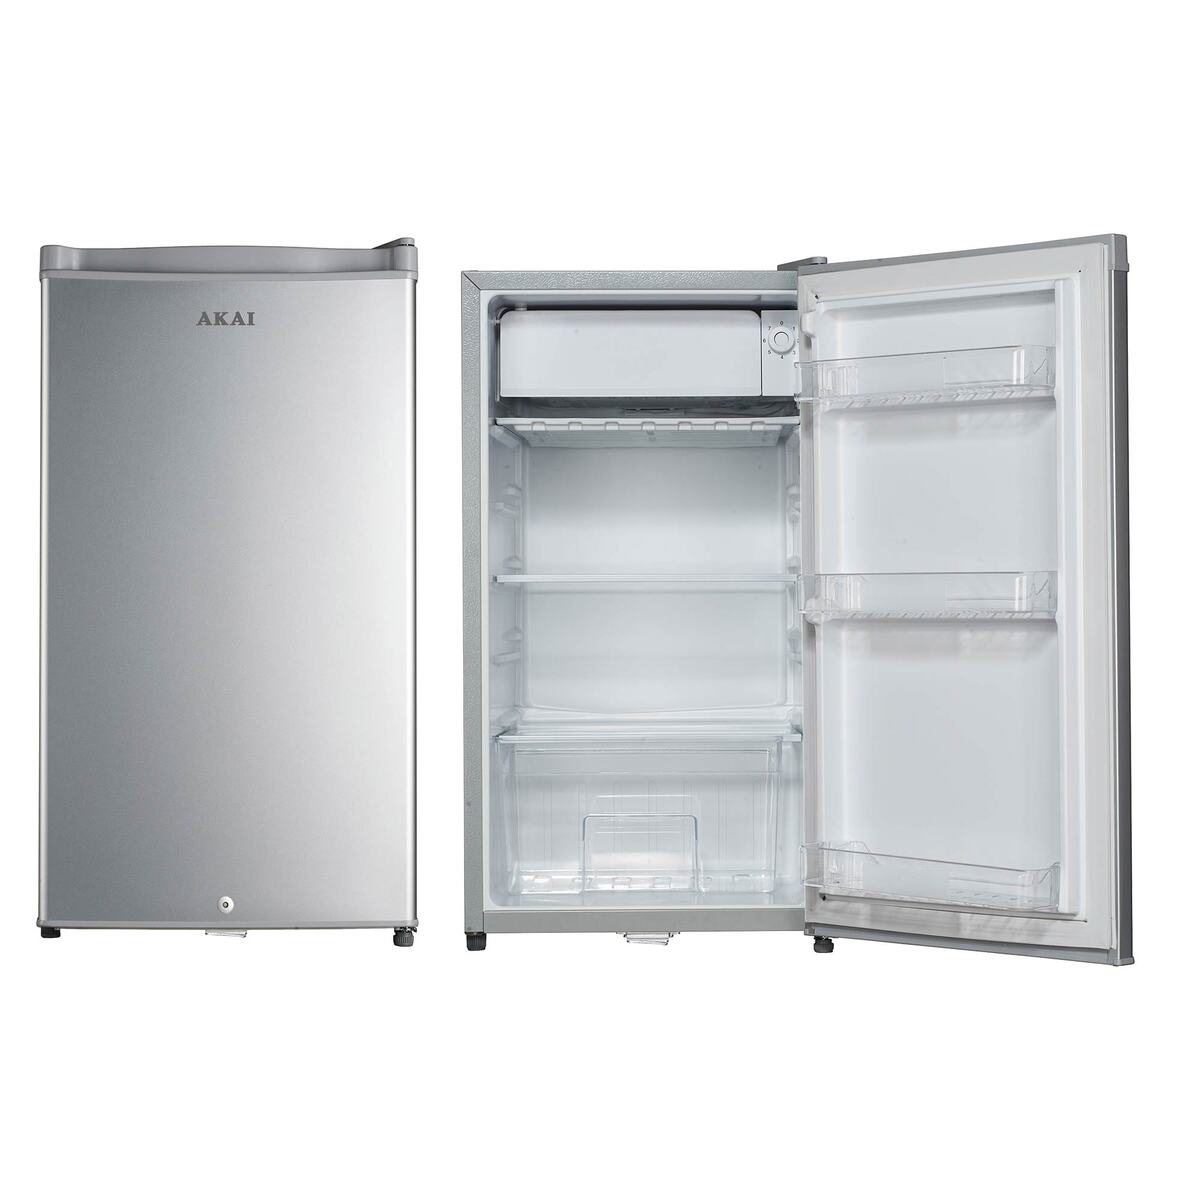 Akai Single Door Refrigerator 84 Ltr - AR161T